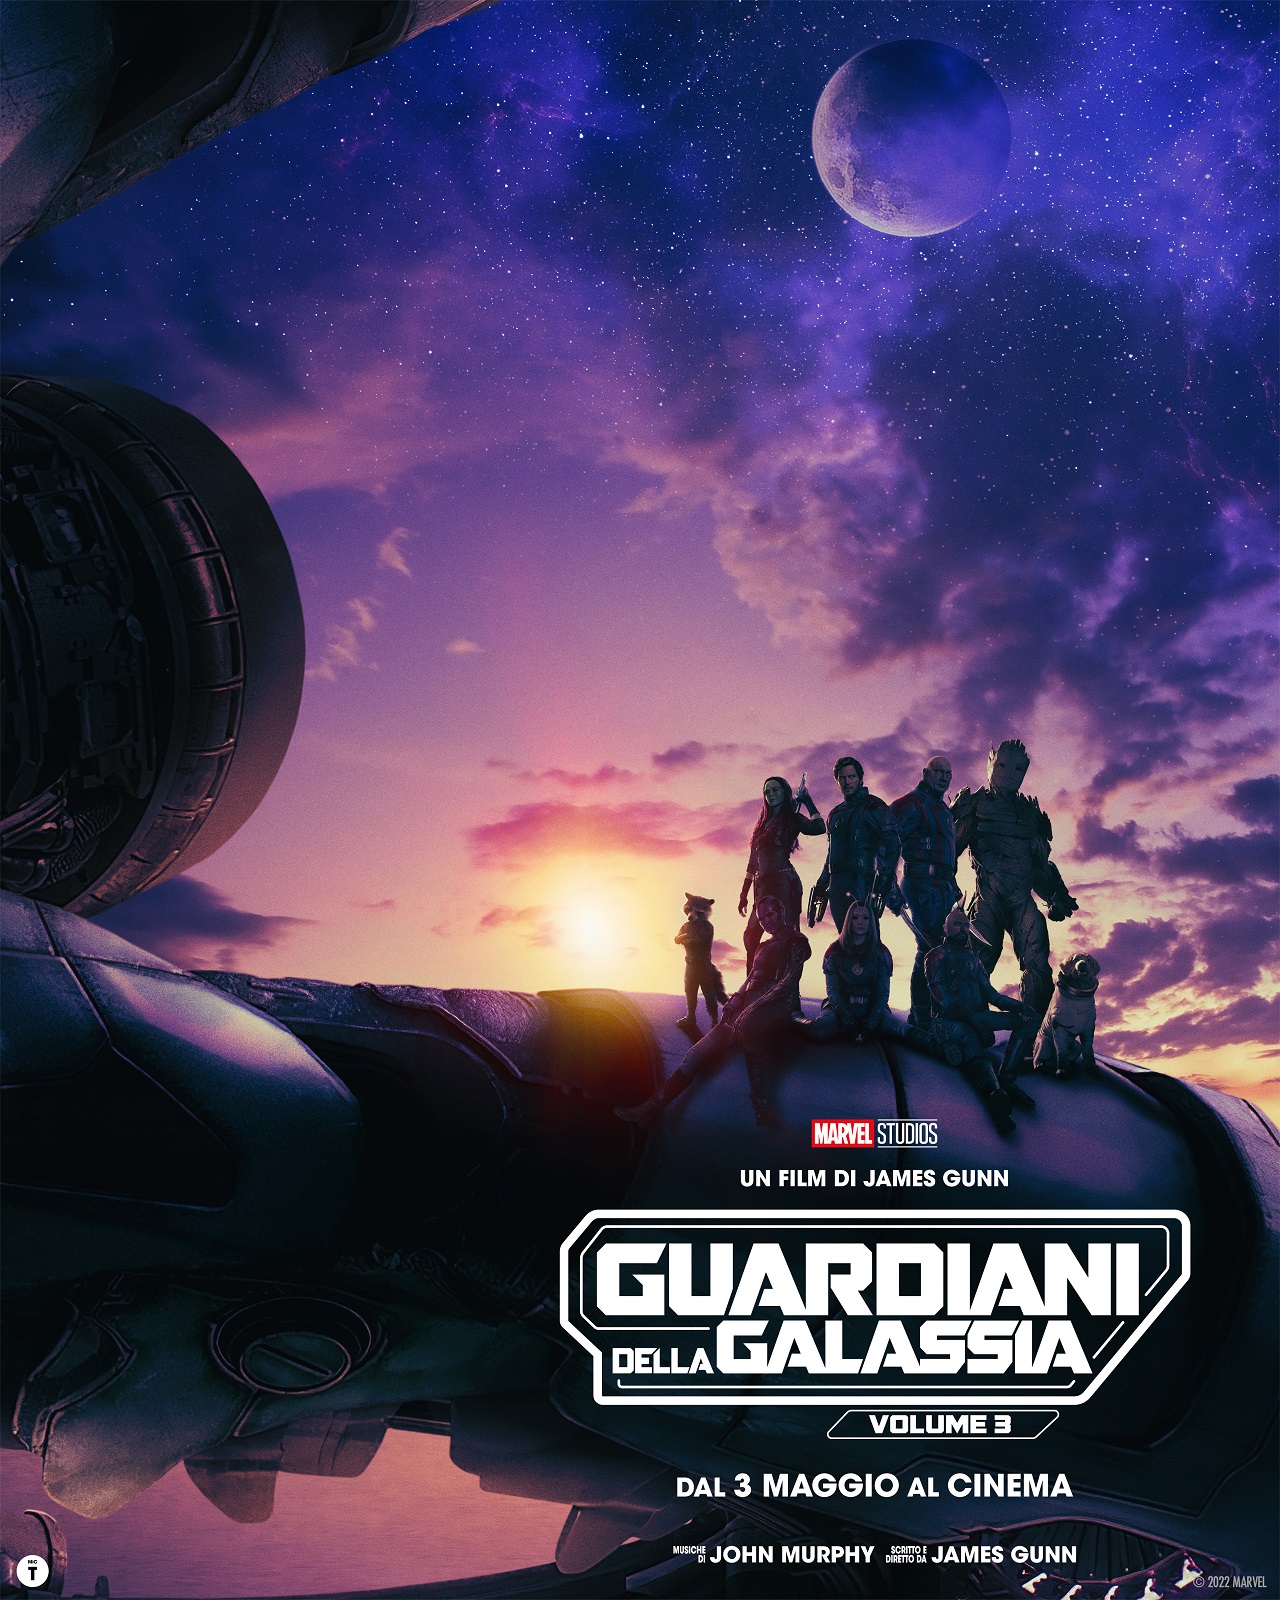 Guardiani della Galassia Vol. 3 trailer